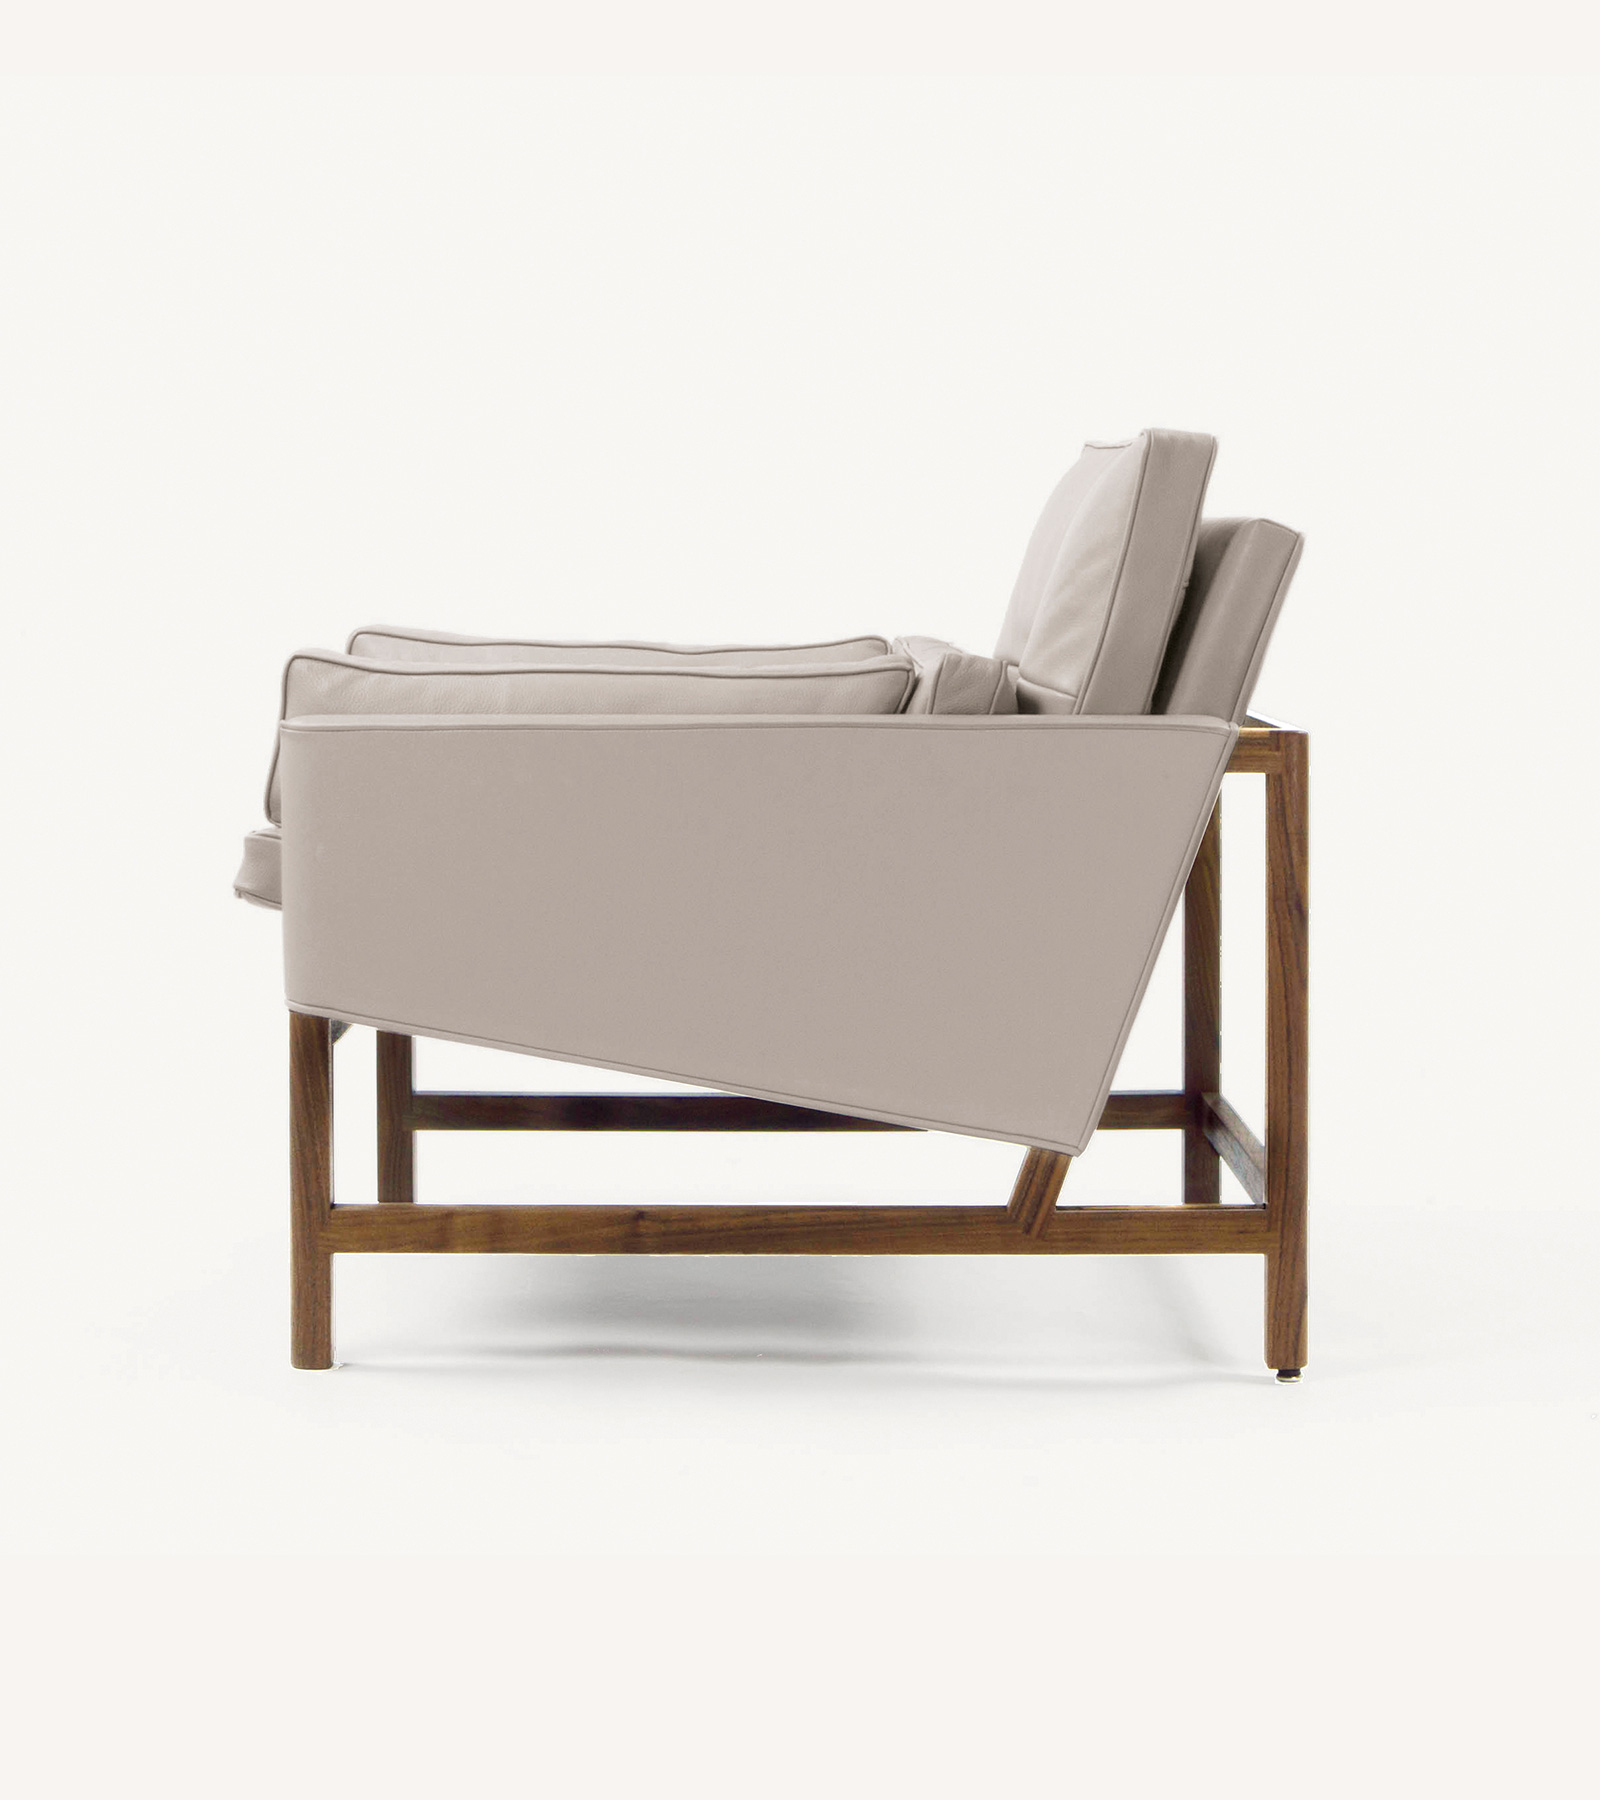 TinnappleMetz-bassamfellows-Wood-Frame-Lounge-Chair-01